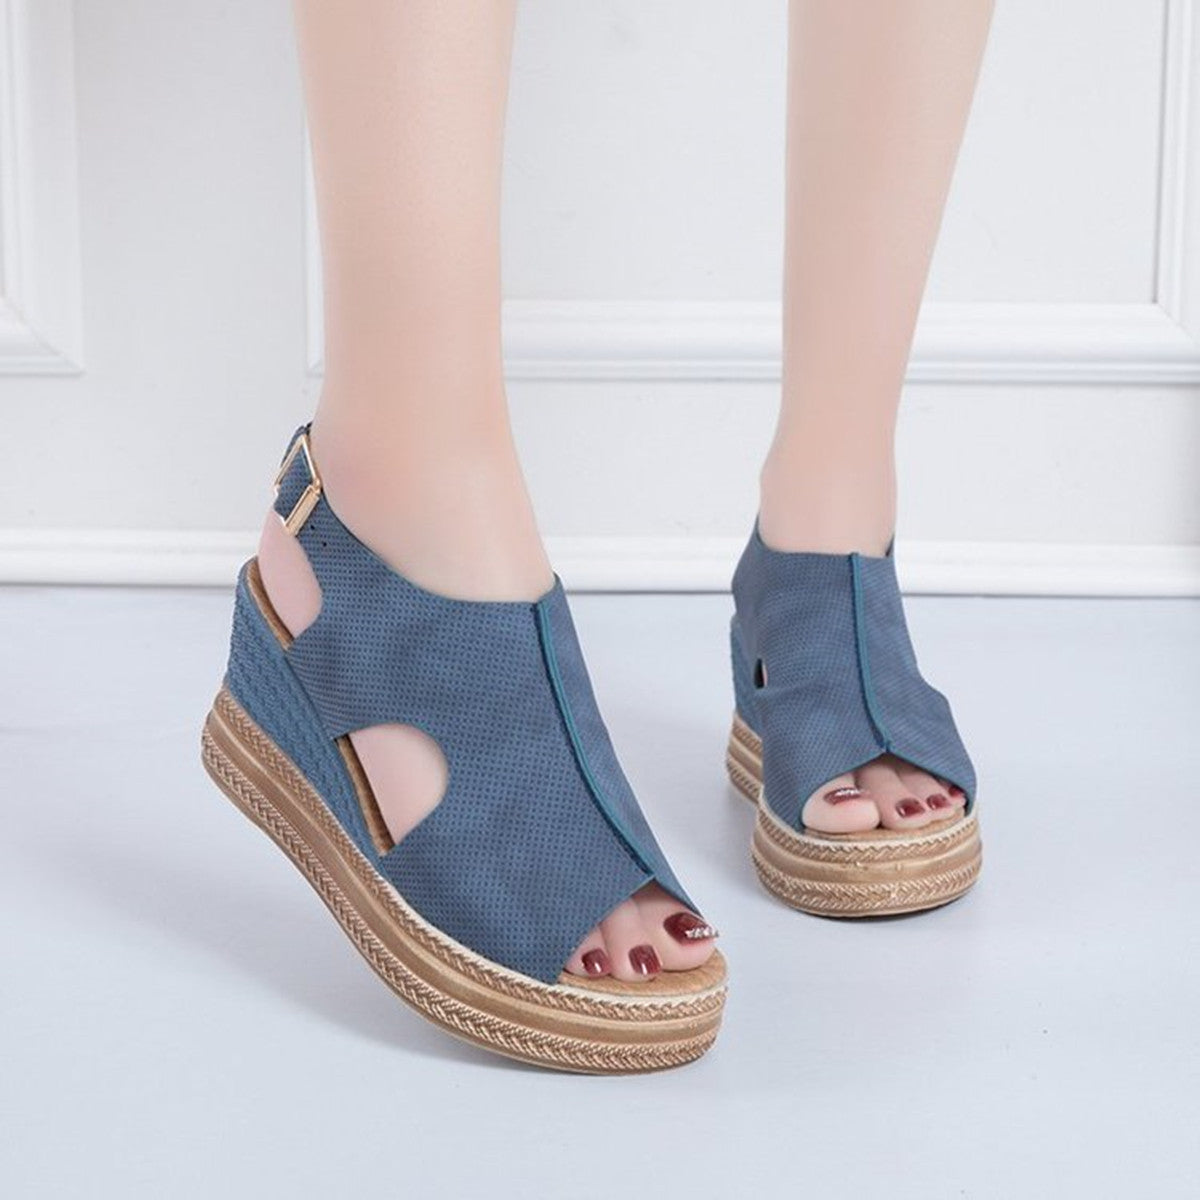 Wedge Heel Platform Shoes Women High Heel Sandals - ladieskits - 0